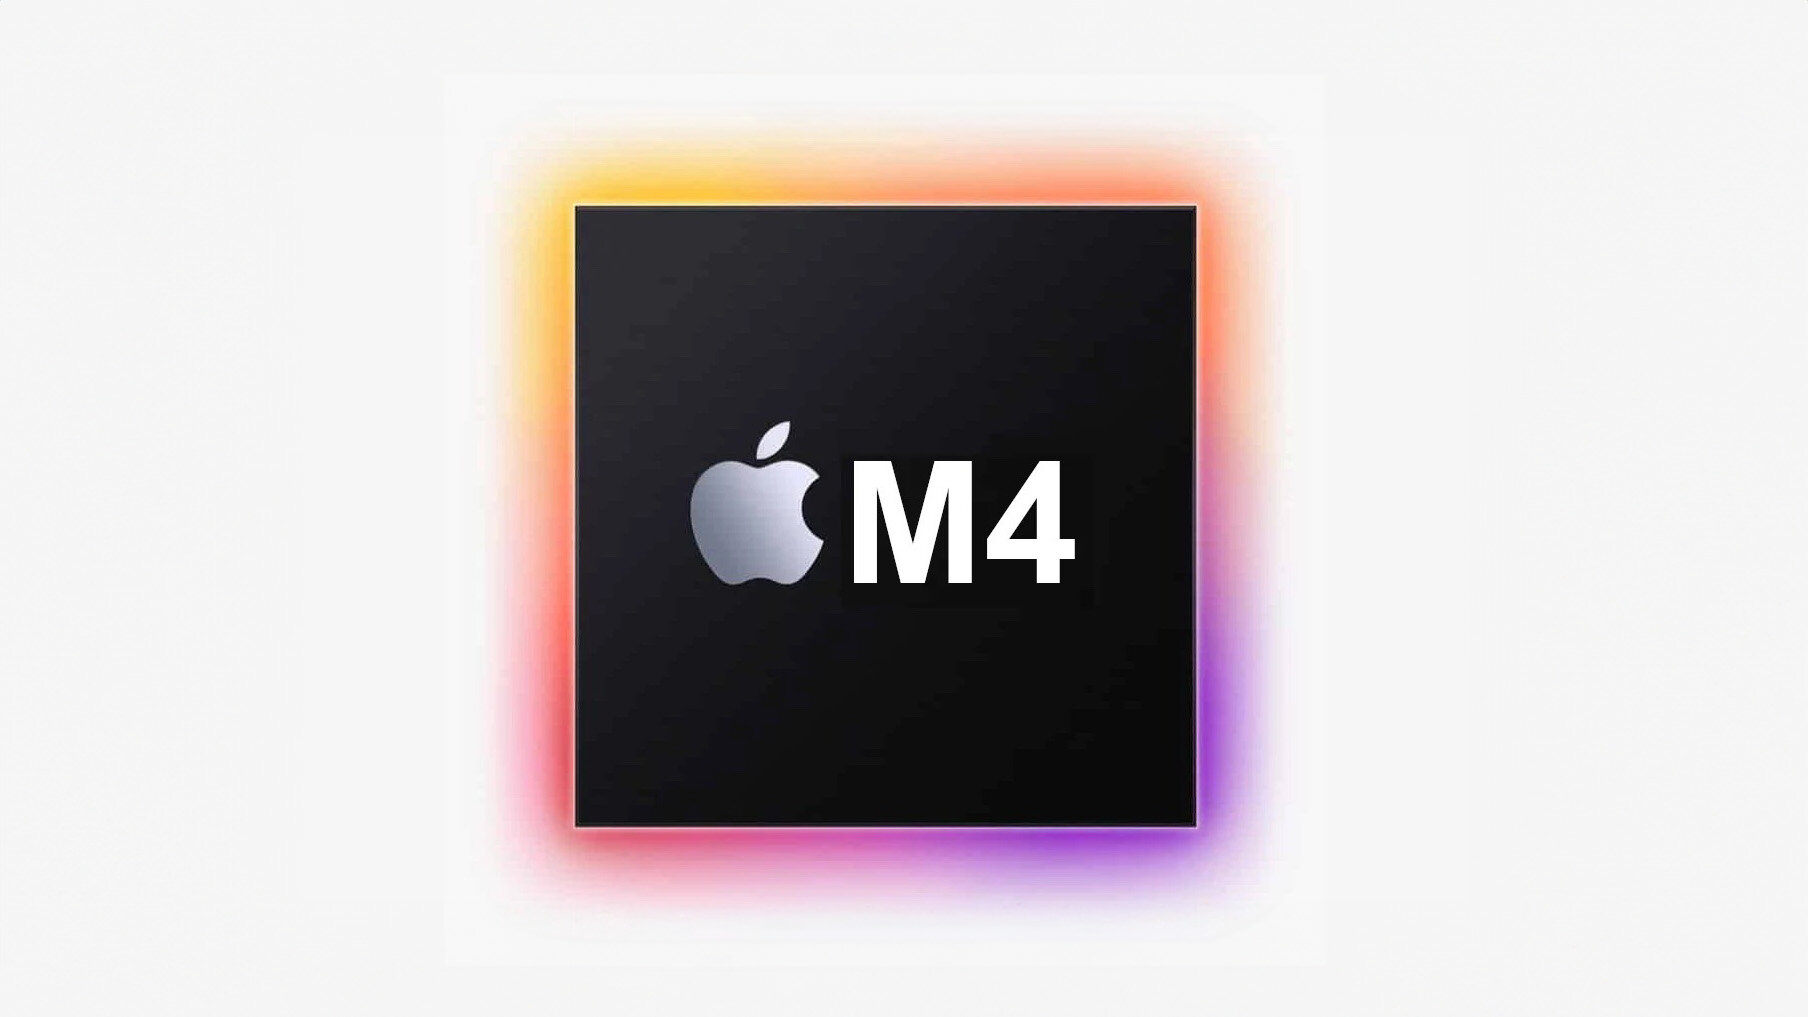 Τα πρώτα M4 τσιπ θα κάνουν την εμφάνισή τους στους Mac από τα τέλη της χρονιάς, με έμφαση στο AI